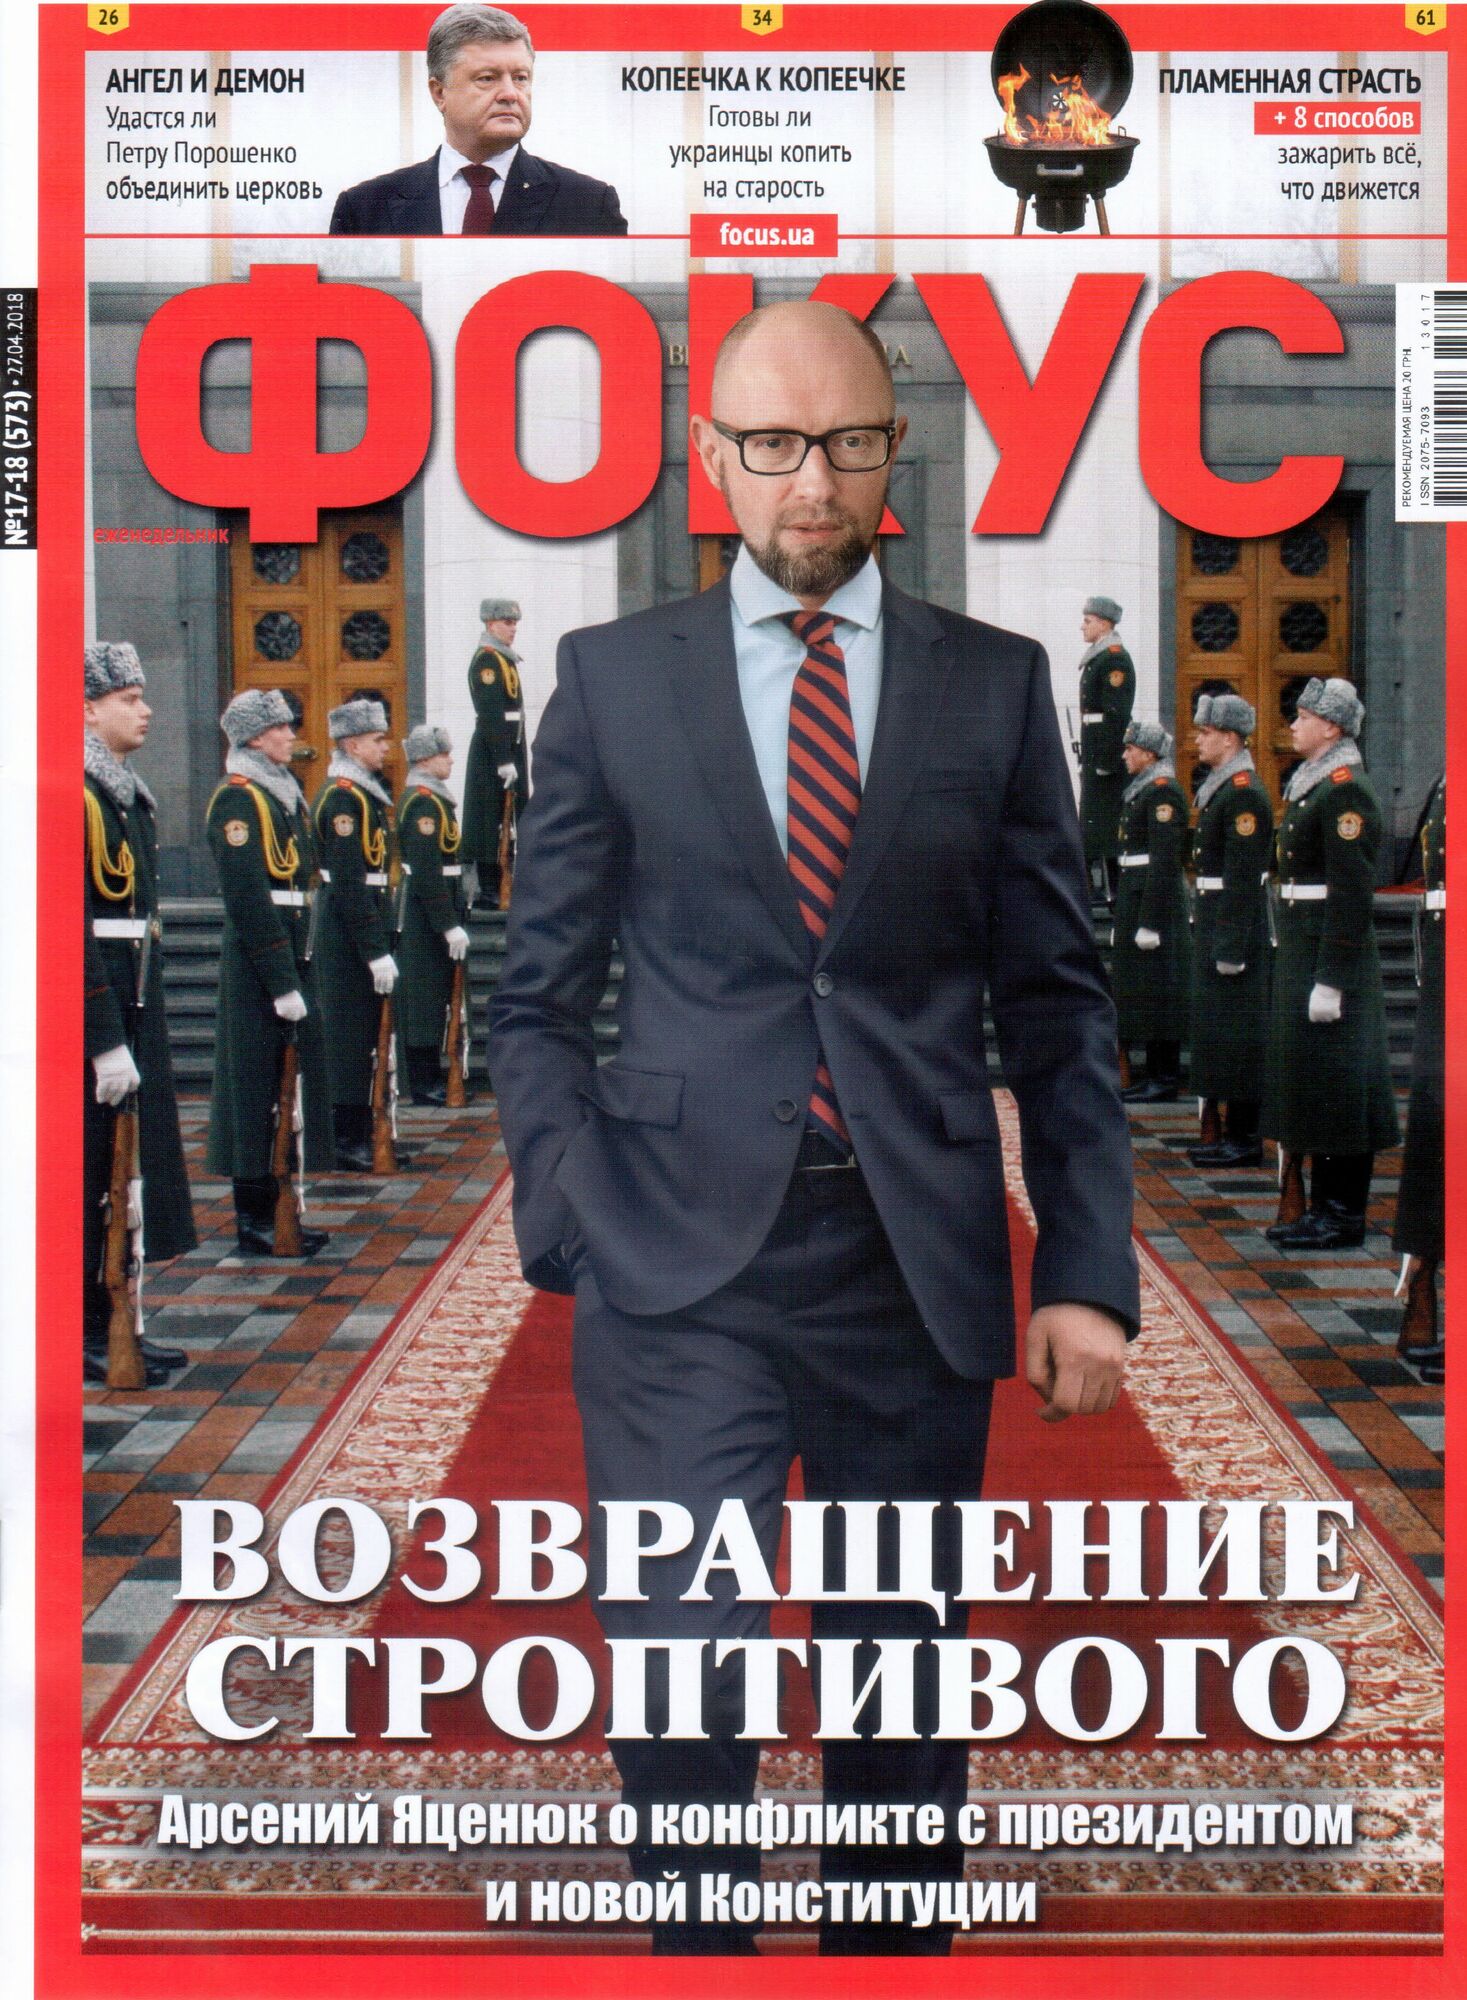 "Повинен мати чітку сферу": Яценюк застеріг президента від долі Путіна